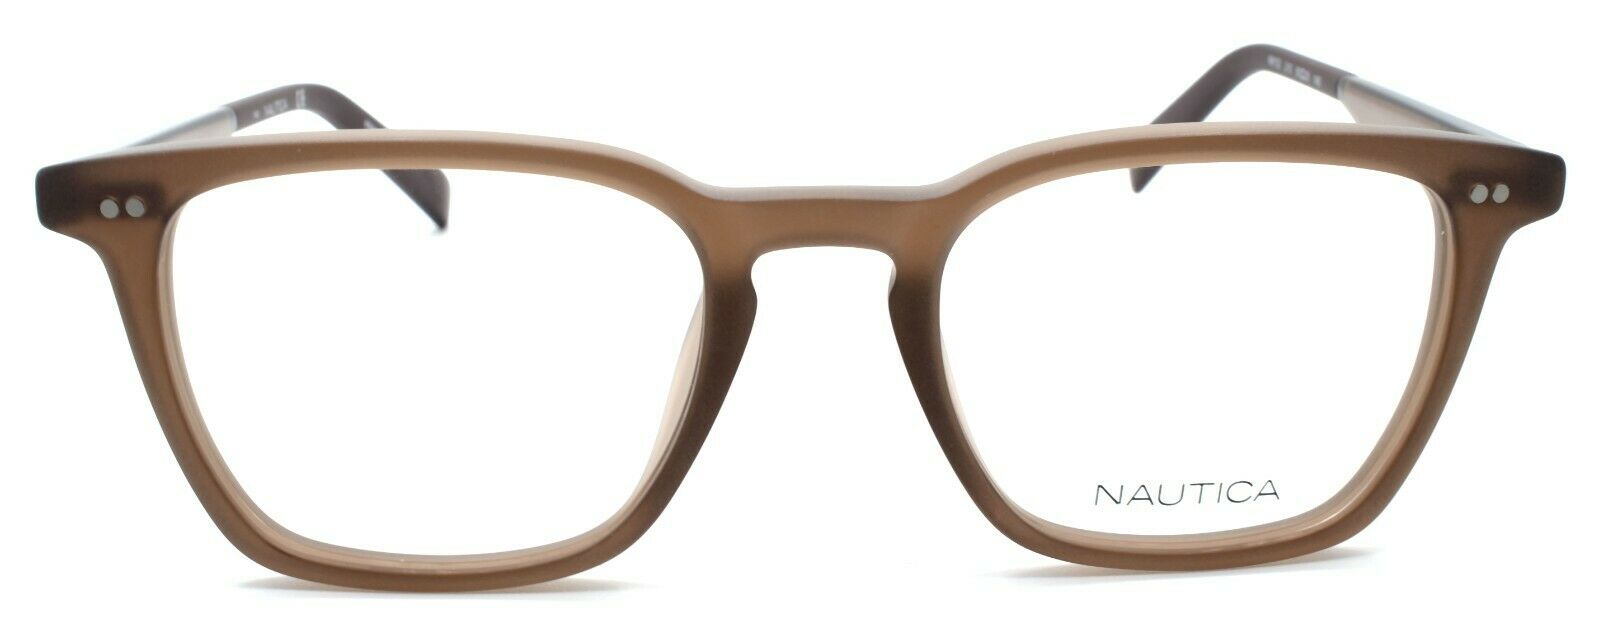 2-Nautica N8152 210 Men's Eyeglasses Frames 50-20-140 Matte Brown-688940462364-IKSpecs